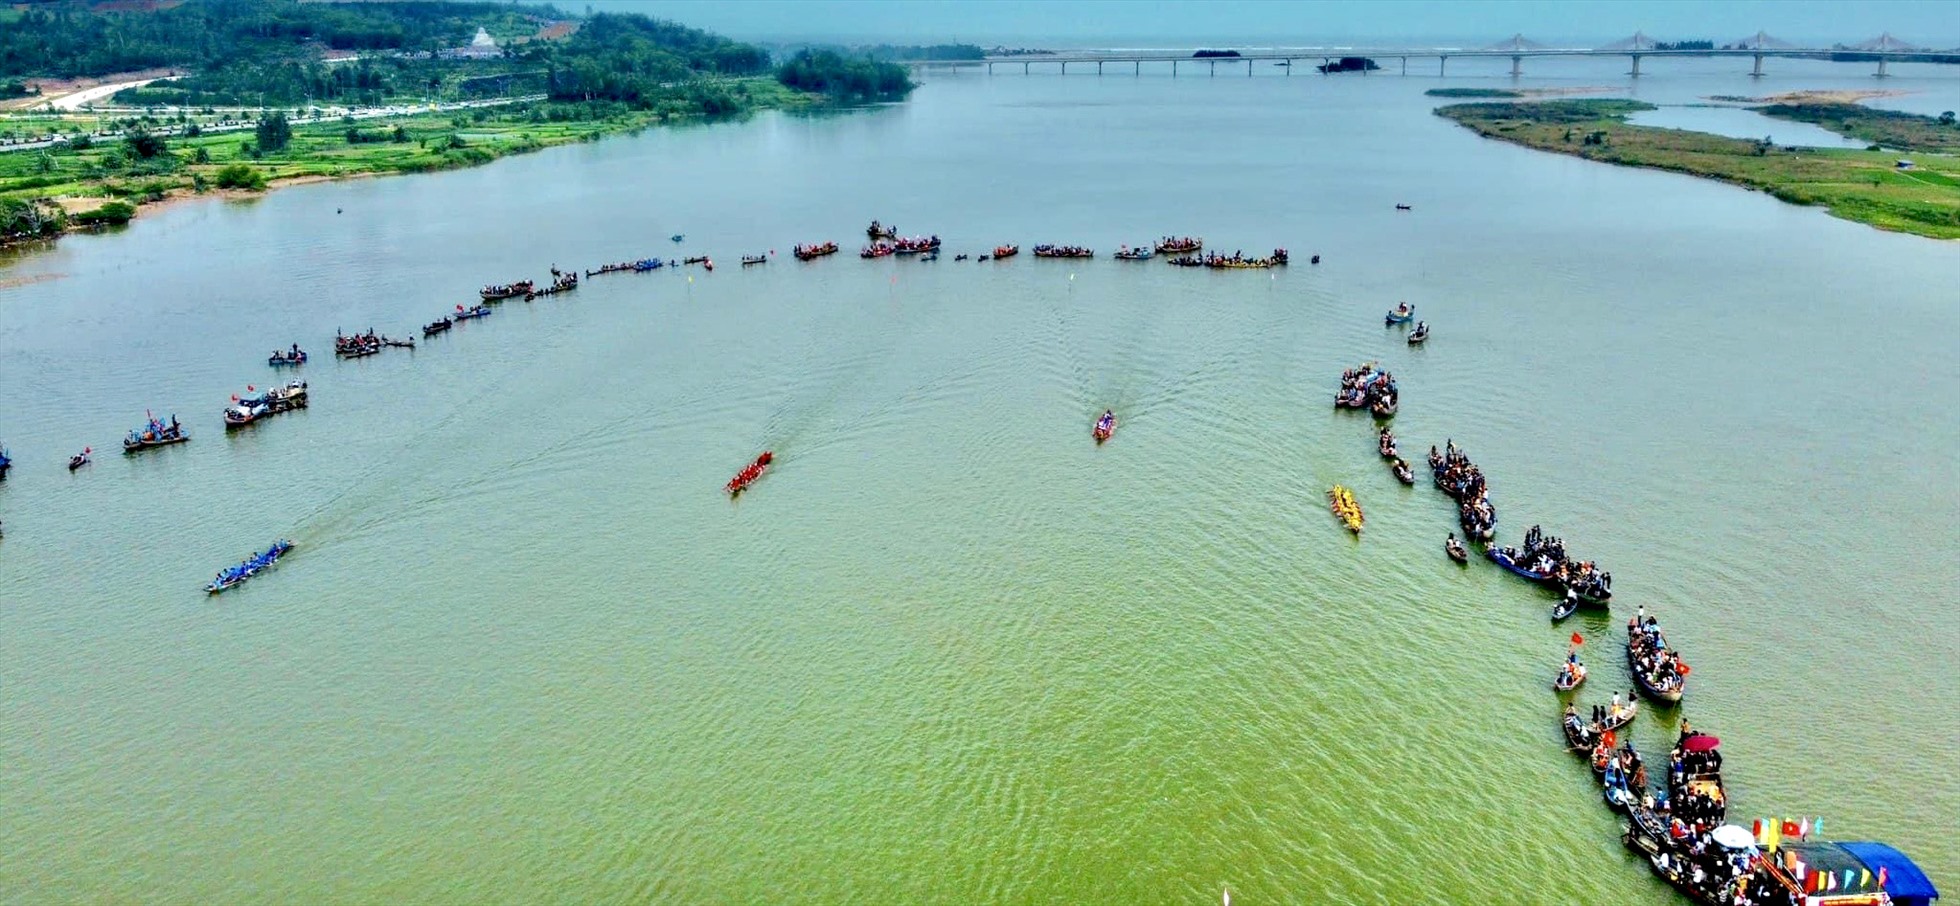 Lễ hội đua thuyền truyền thống trên sông Trà Khúc được xã Tịnh Long, TP Quảng Ngãi tổ chức 2 năm 1 lần, vào mùng 5 và mùng 6 Tết Nguyên đán. Ảnh: Ngọc Viên